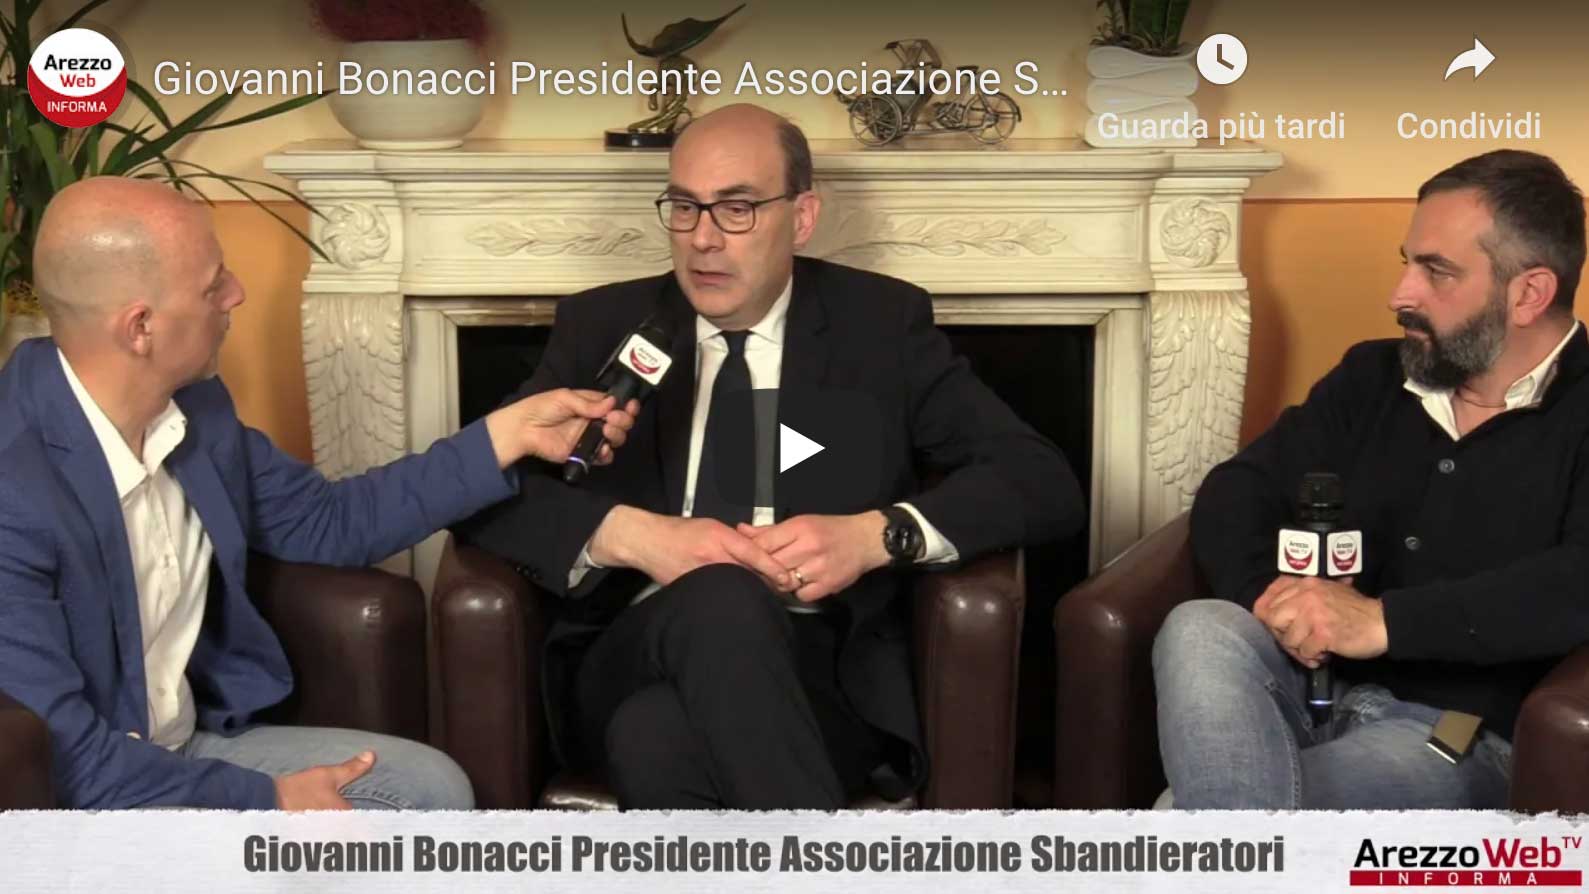 Giovanni Bonacci Presidente Associazione Sbandieratori ospite a “UN ALTRO GIRO DI GIOSTRA”